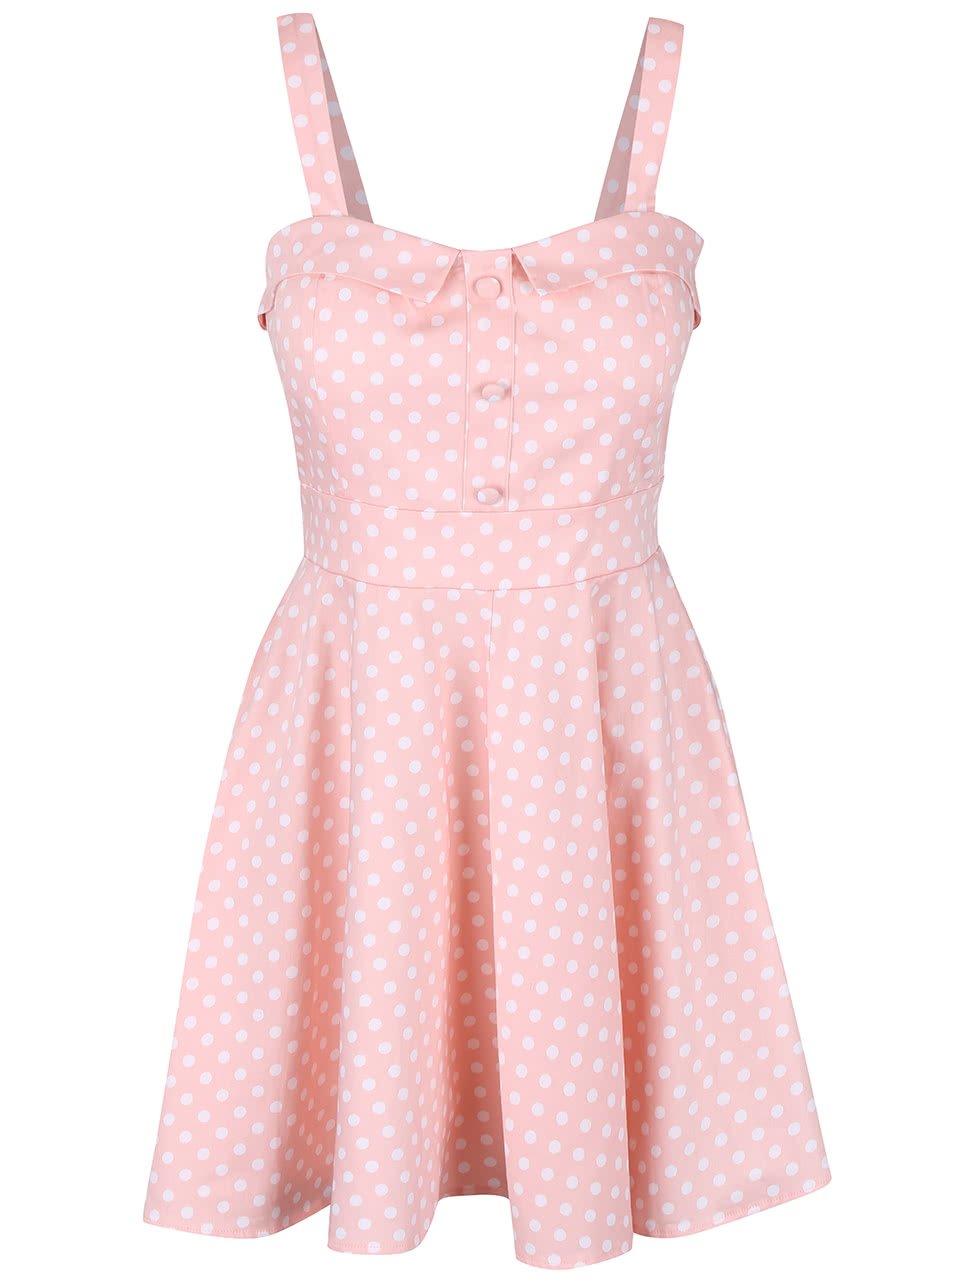 Růžové šaty s bílými puntíky Apricot